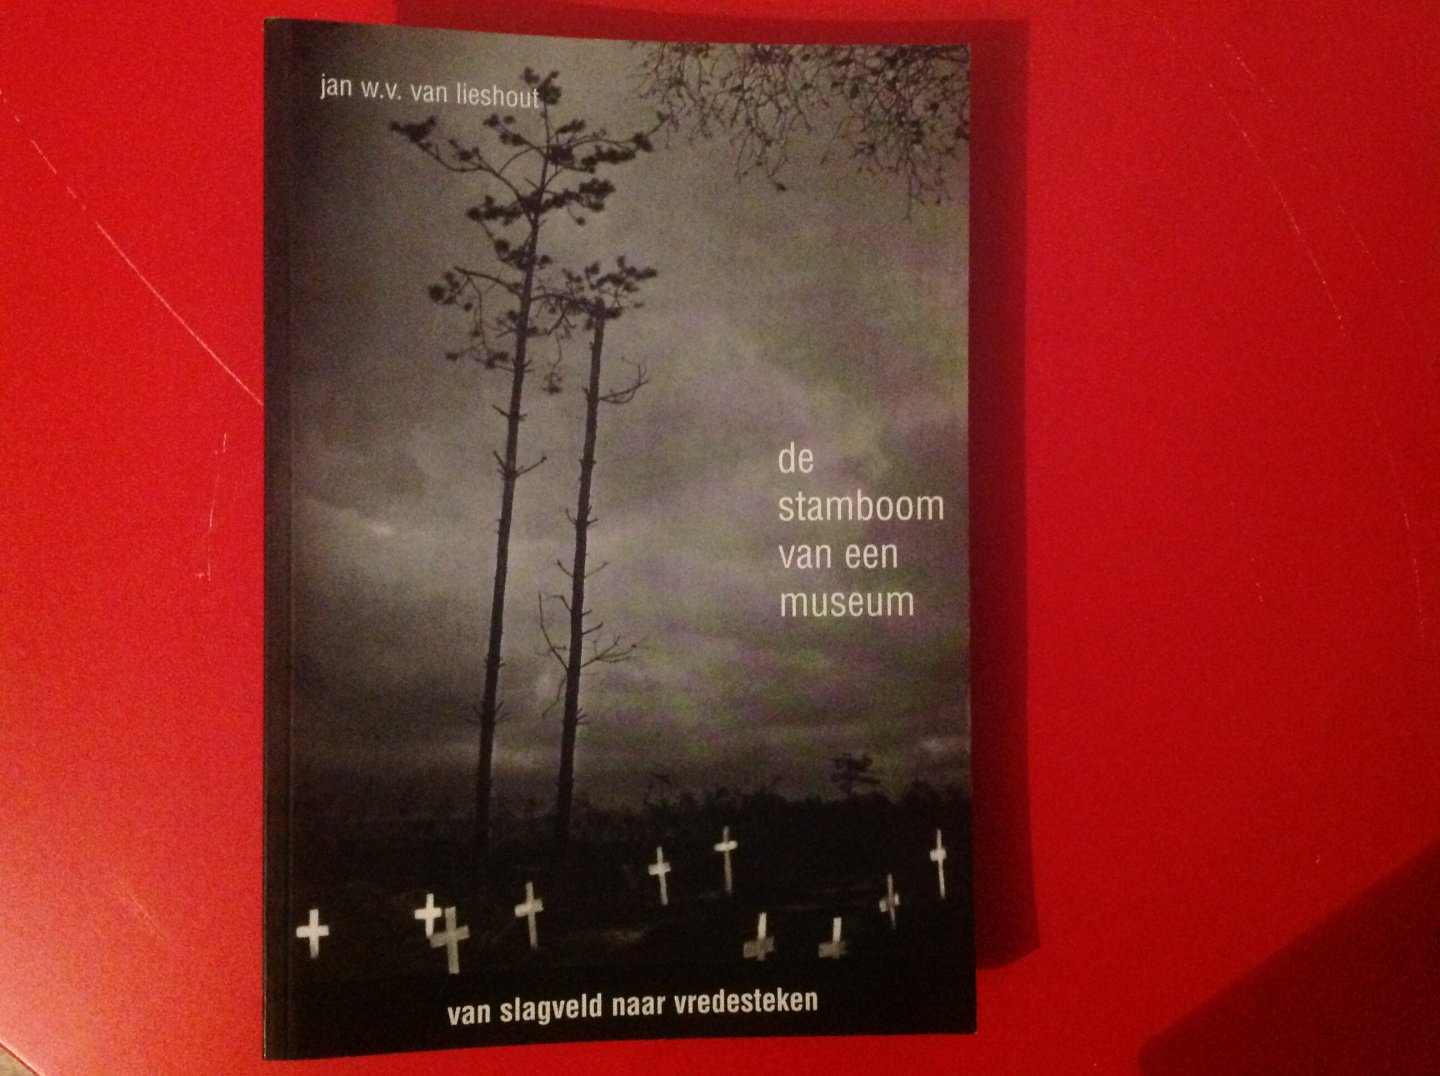 Lieshout - Stamboom / 2 van een museum / druk 1